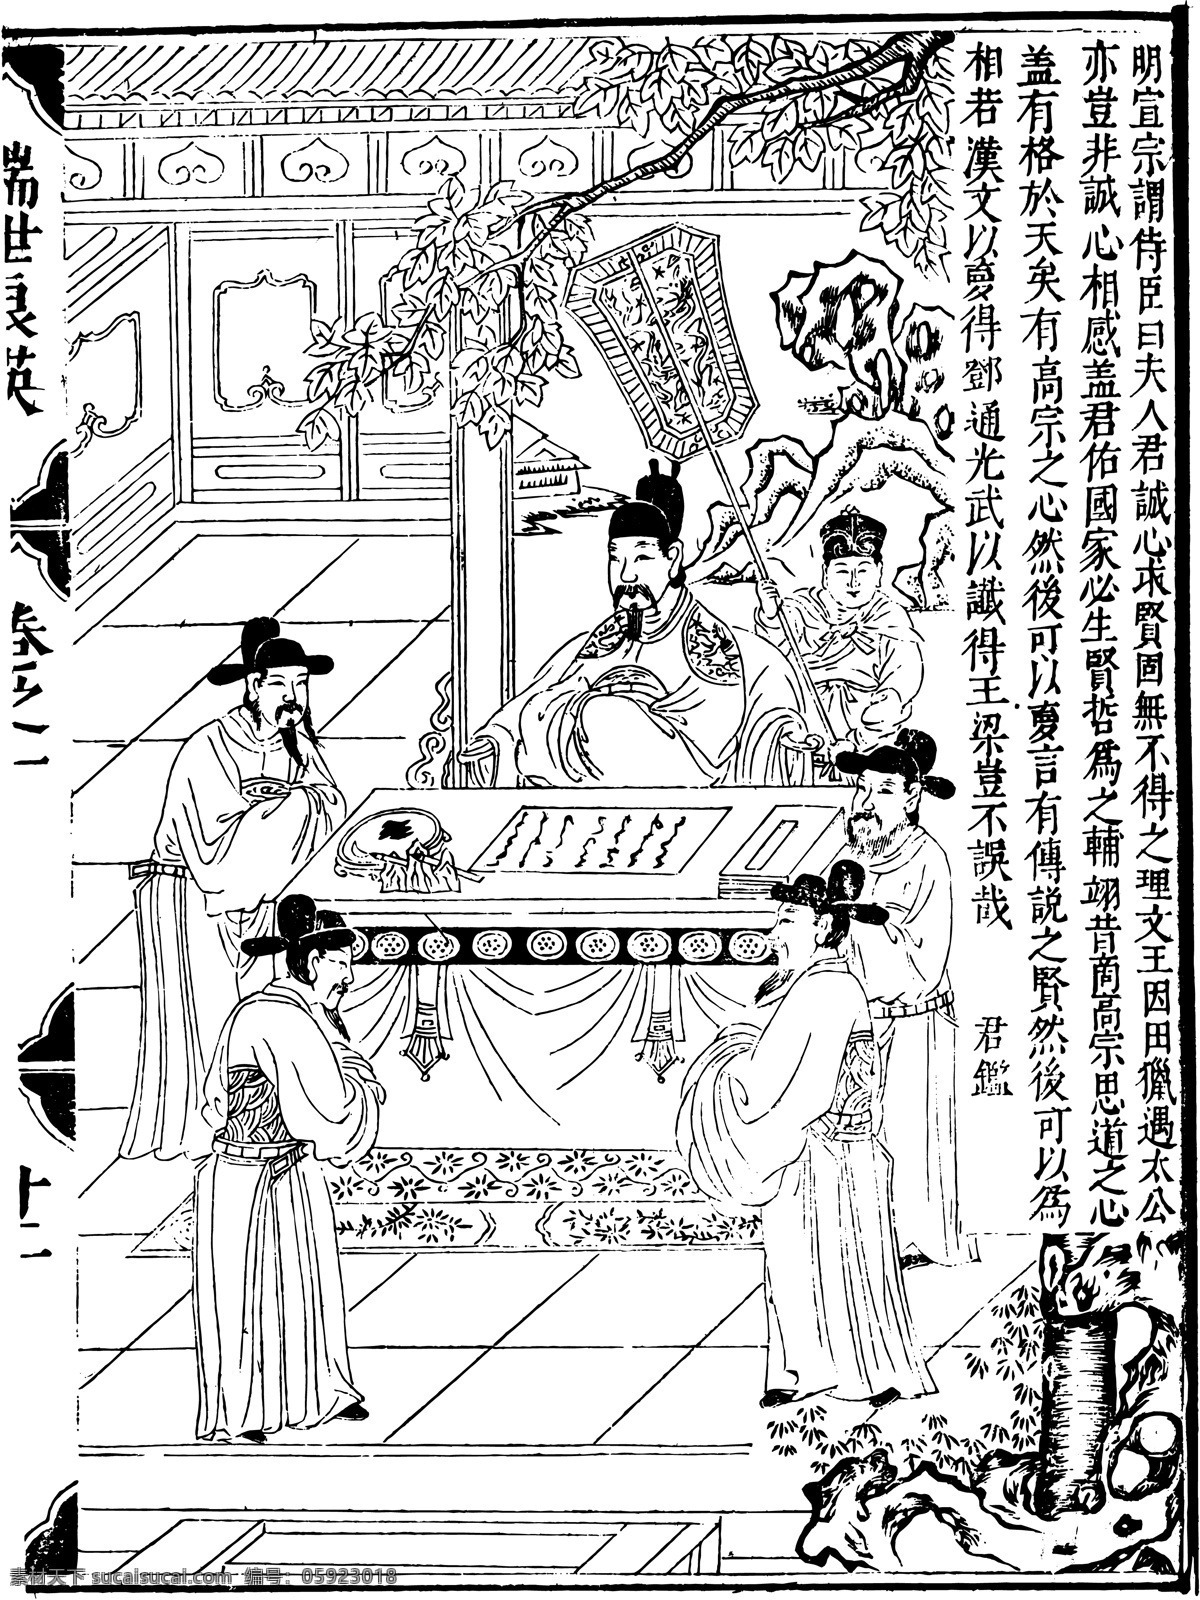 瑞世良英 木刻版画 中国 传统文化 37 中国传统文化 设计素材 版画世界 书画美术 白色